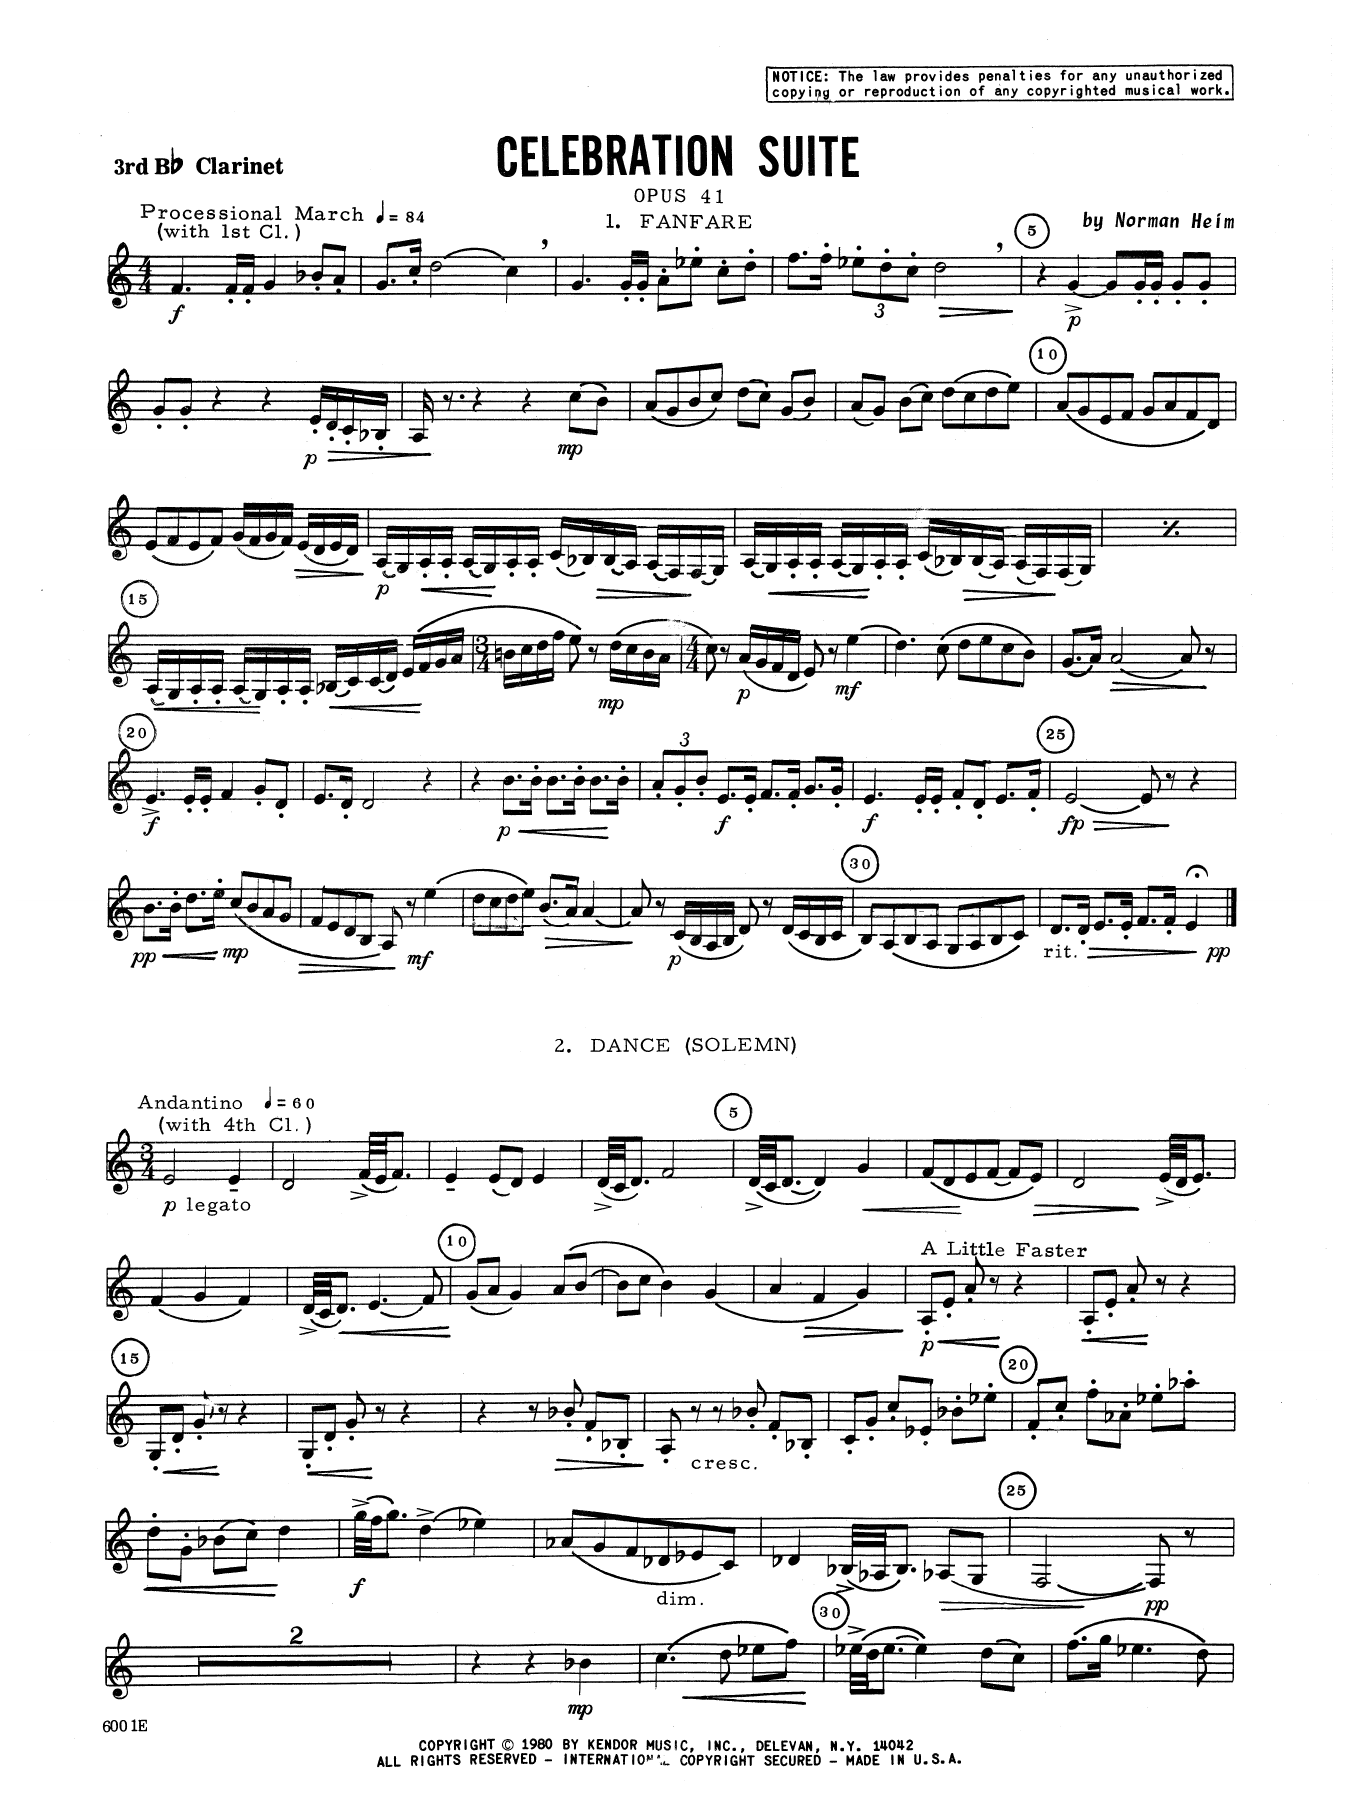 Download Heim Celebration Suite - 3rd Bb Clarinet Sheet Music